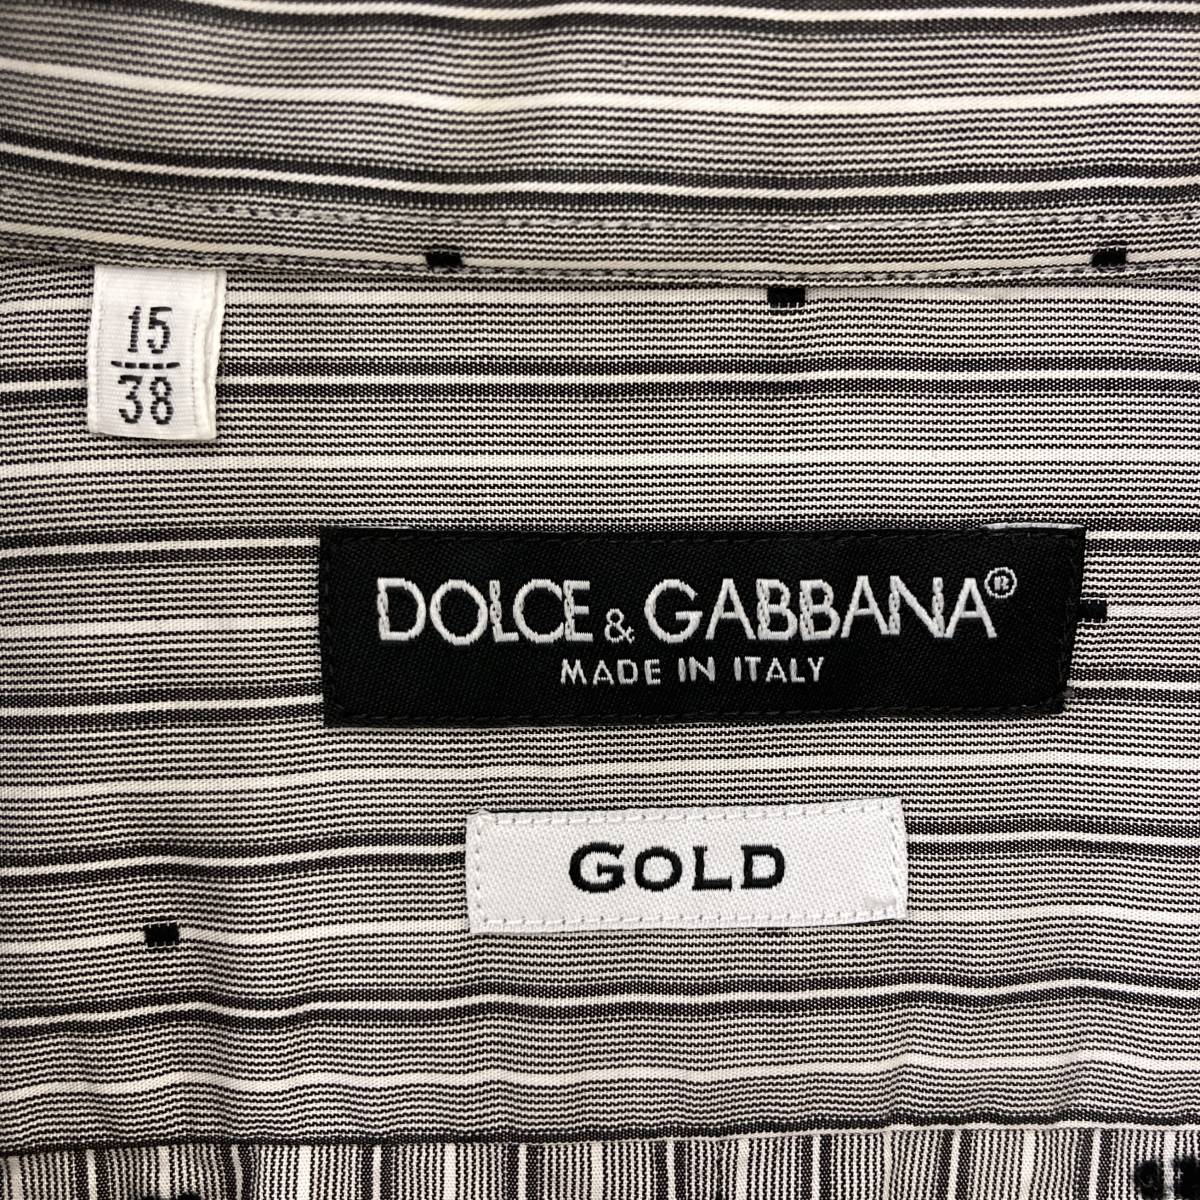 DOLCE&GABBANA GOLD イタリア製 総柄 ストライプ 長袖シャツ メンズ 38サイズ ドルチェ&ガッバーナ ドルガバ D&G 3060449_画像4